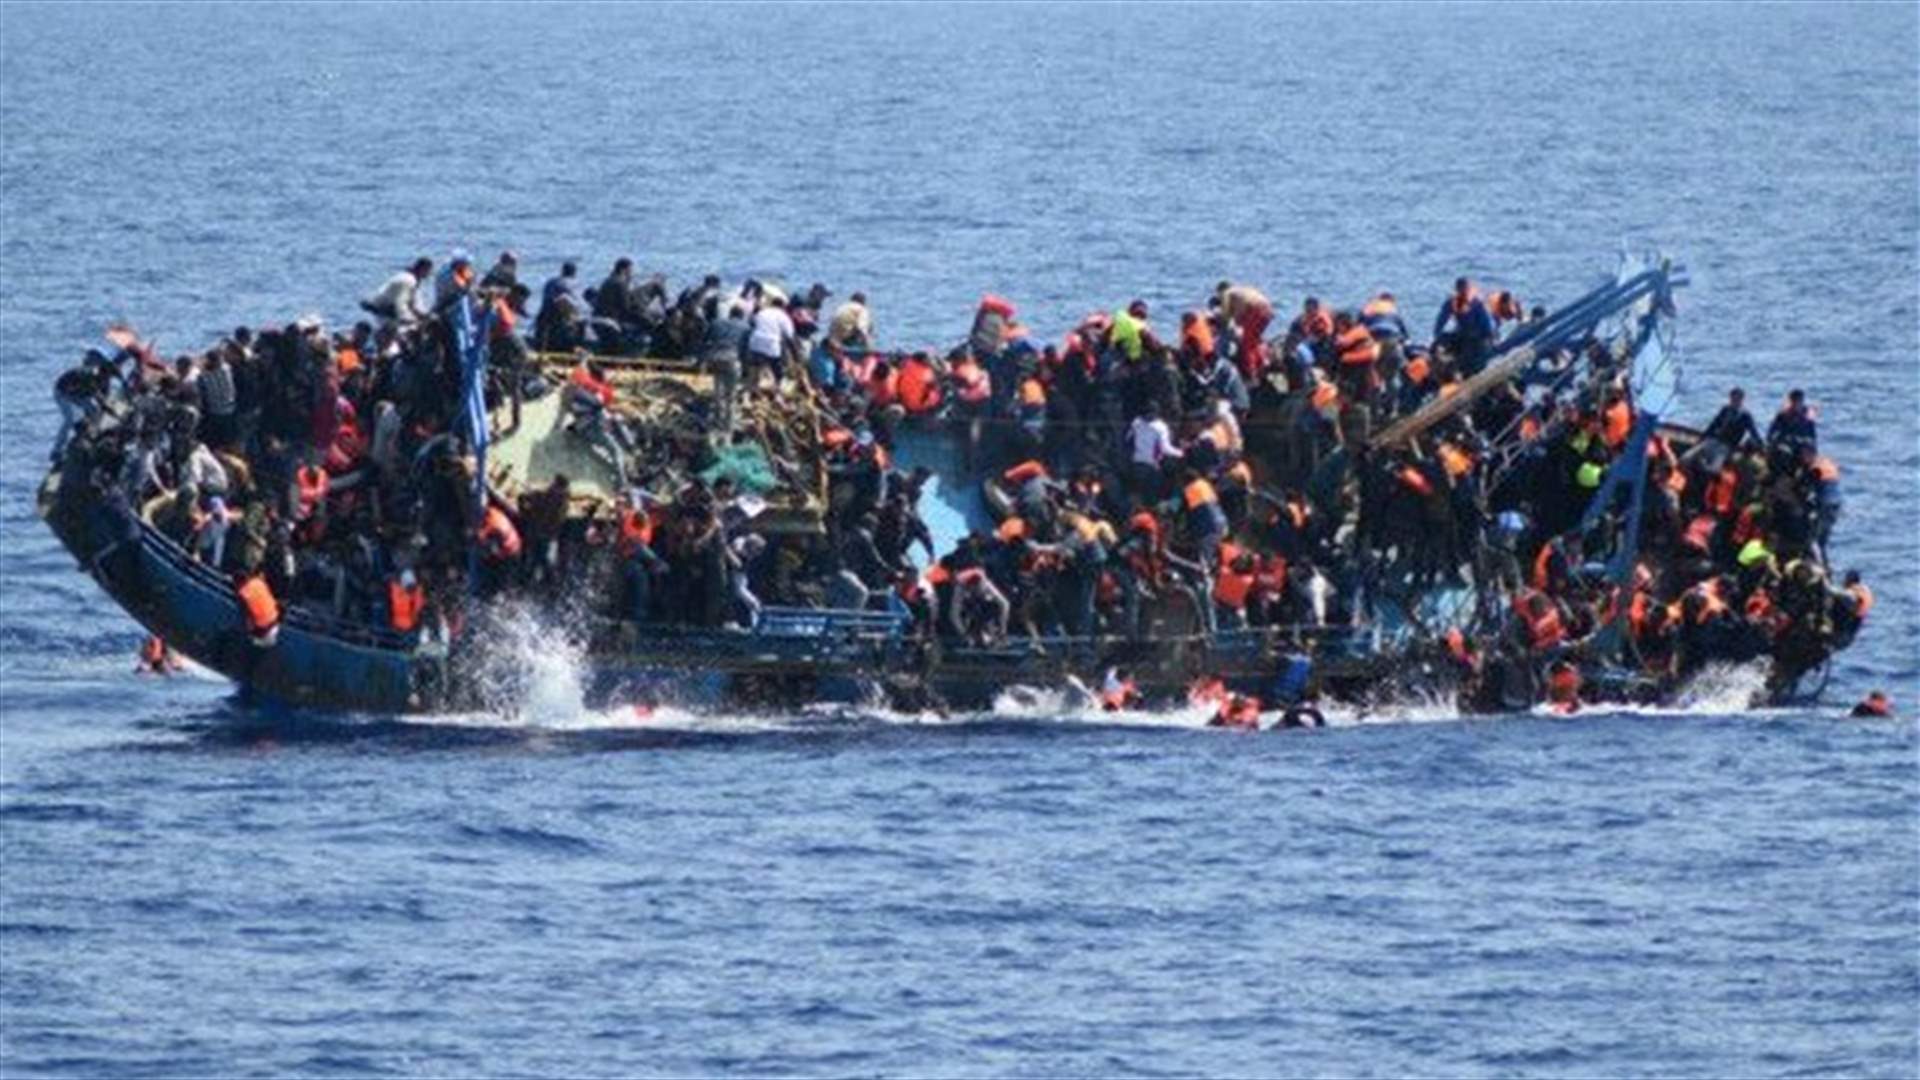 الأمم المتحدة: أكثر من 3000 مهاجر فقدوا في البحر أثناء محاولتهم الوصول إلى أوروبا في 2021